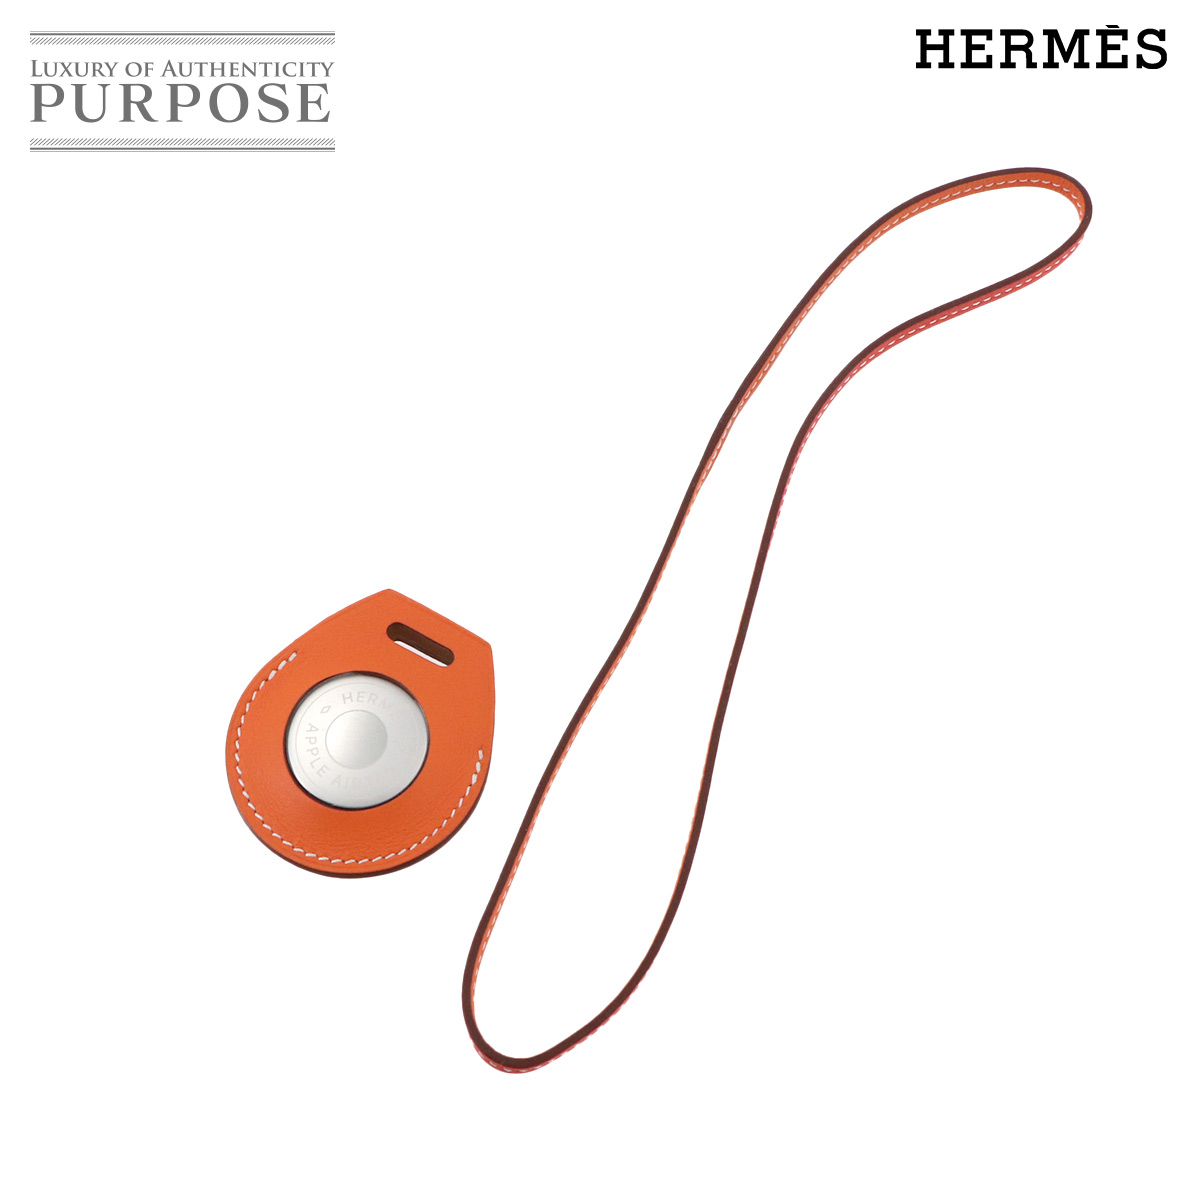  не использовался выставленный товар Hermes HERMES Apple воздушный бирка сумка очарование Swift orange Gold капсулпа si-nZ печать Apple AirTag 90229524